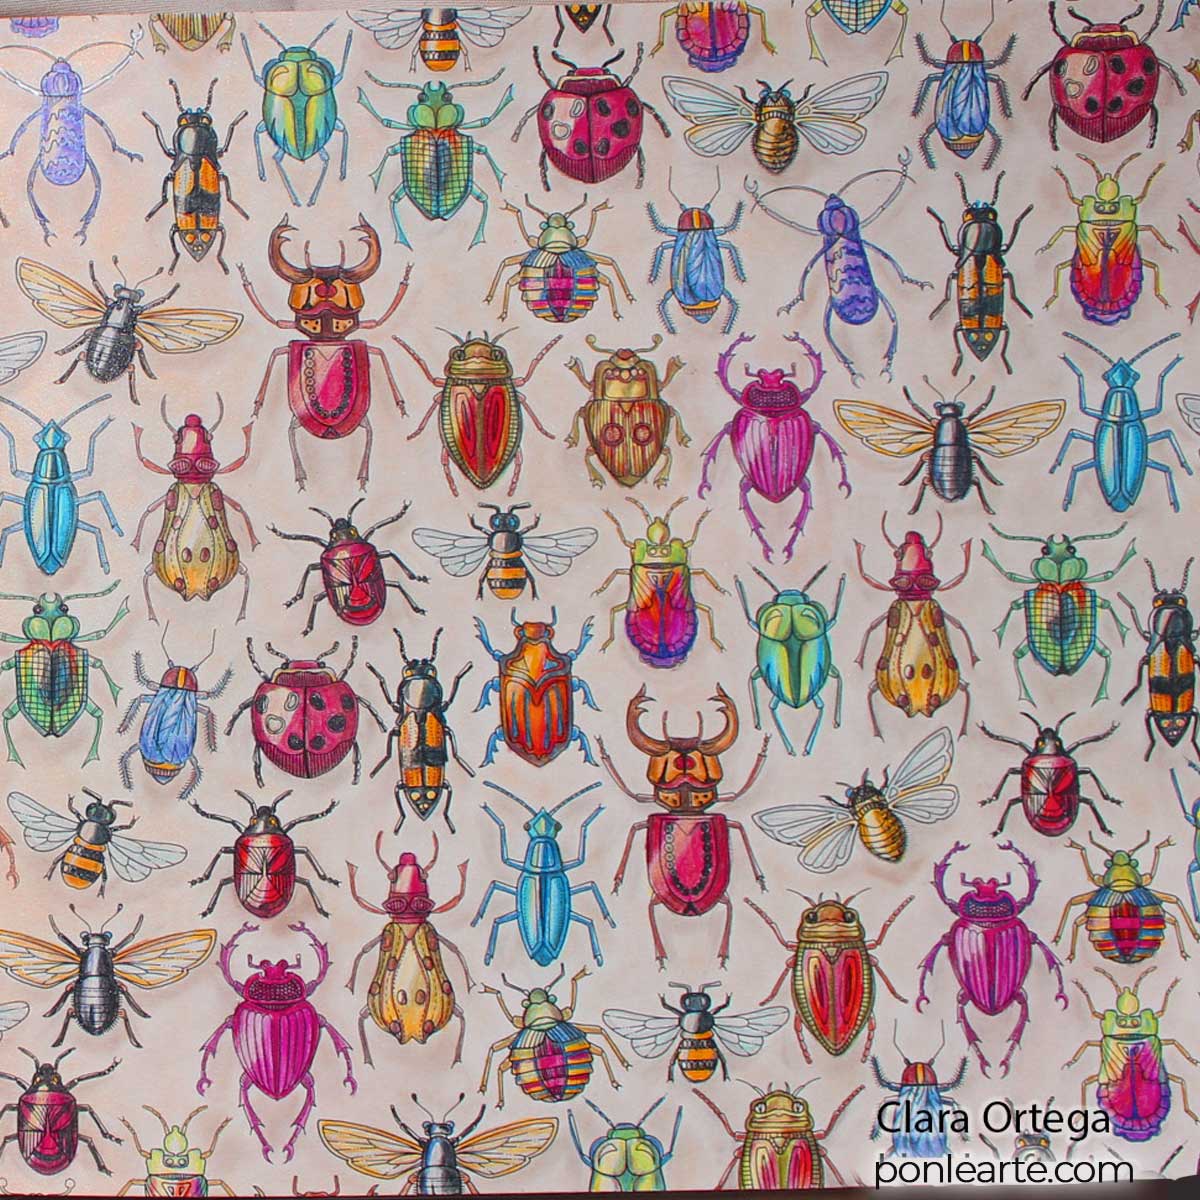 Árbol y escarabajos. Secret Garden. Colorear. Clara Ortega. Ponle arte.